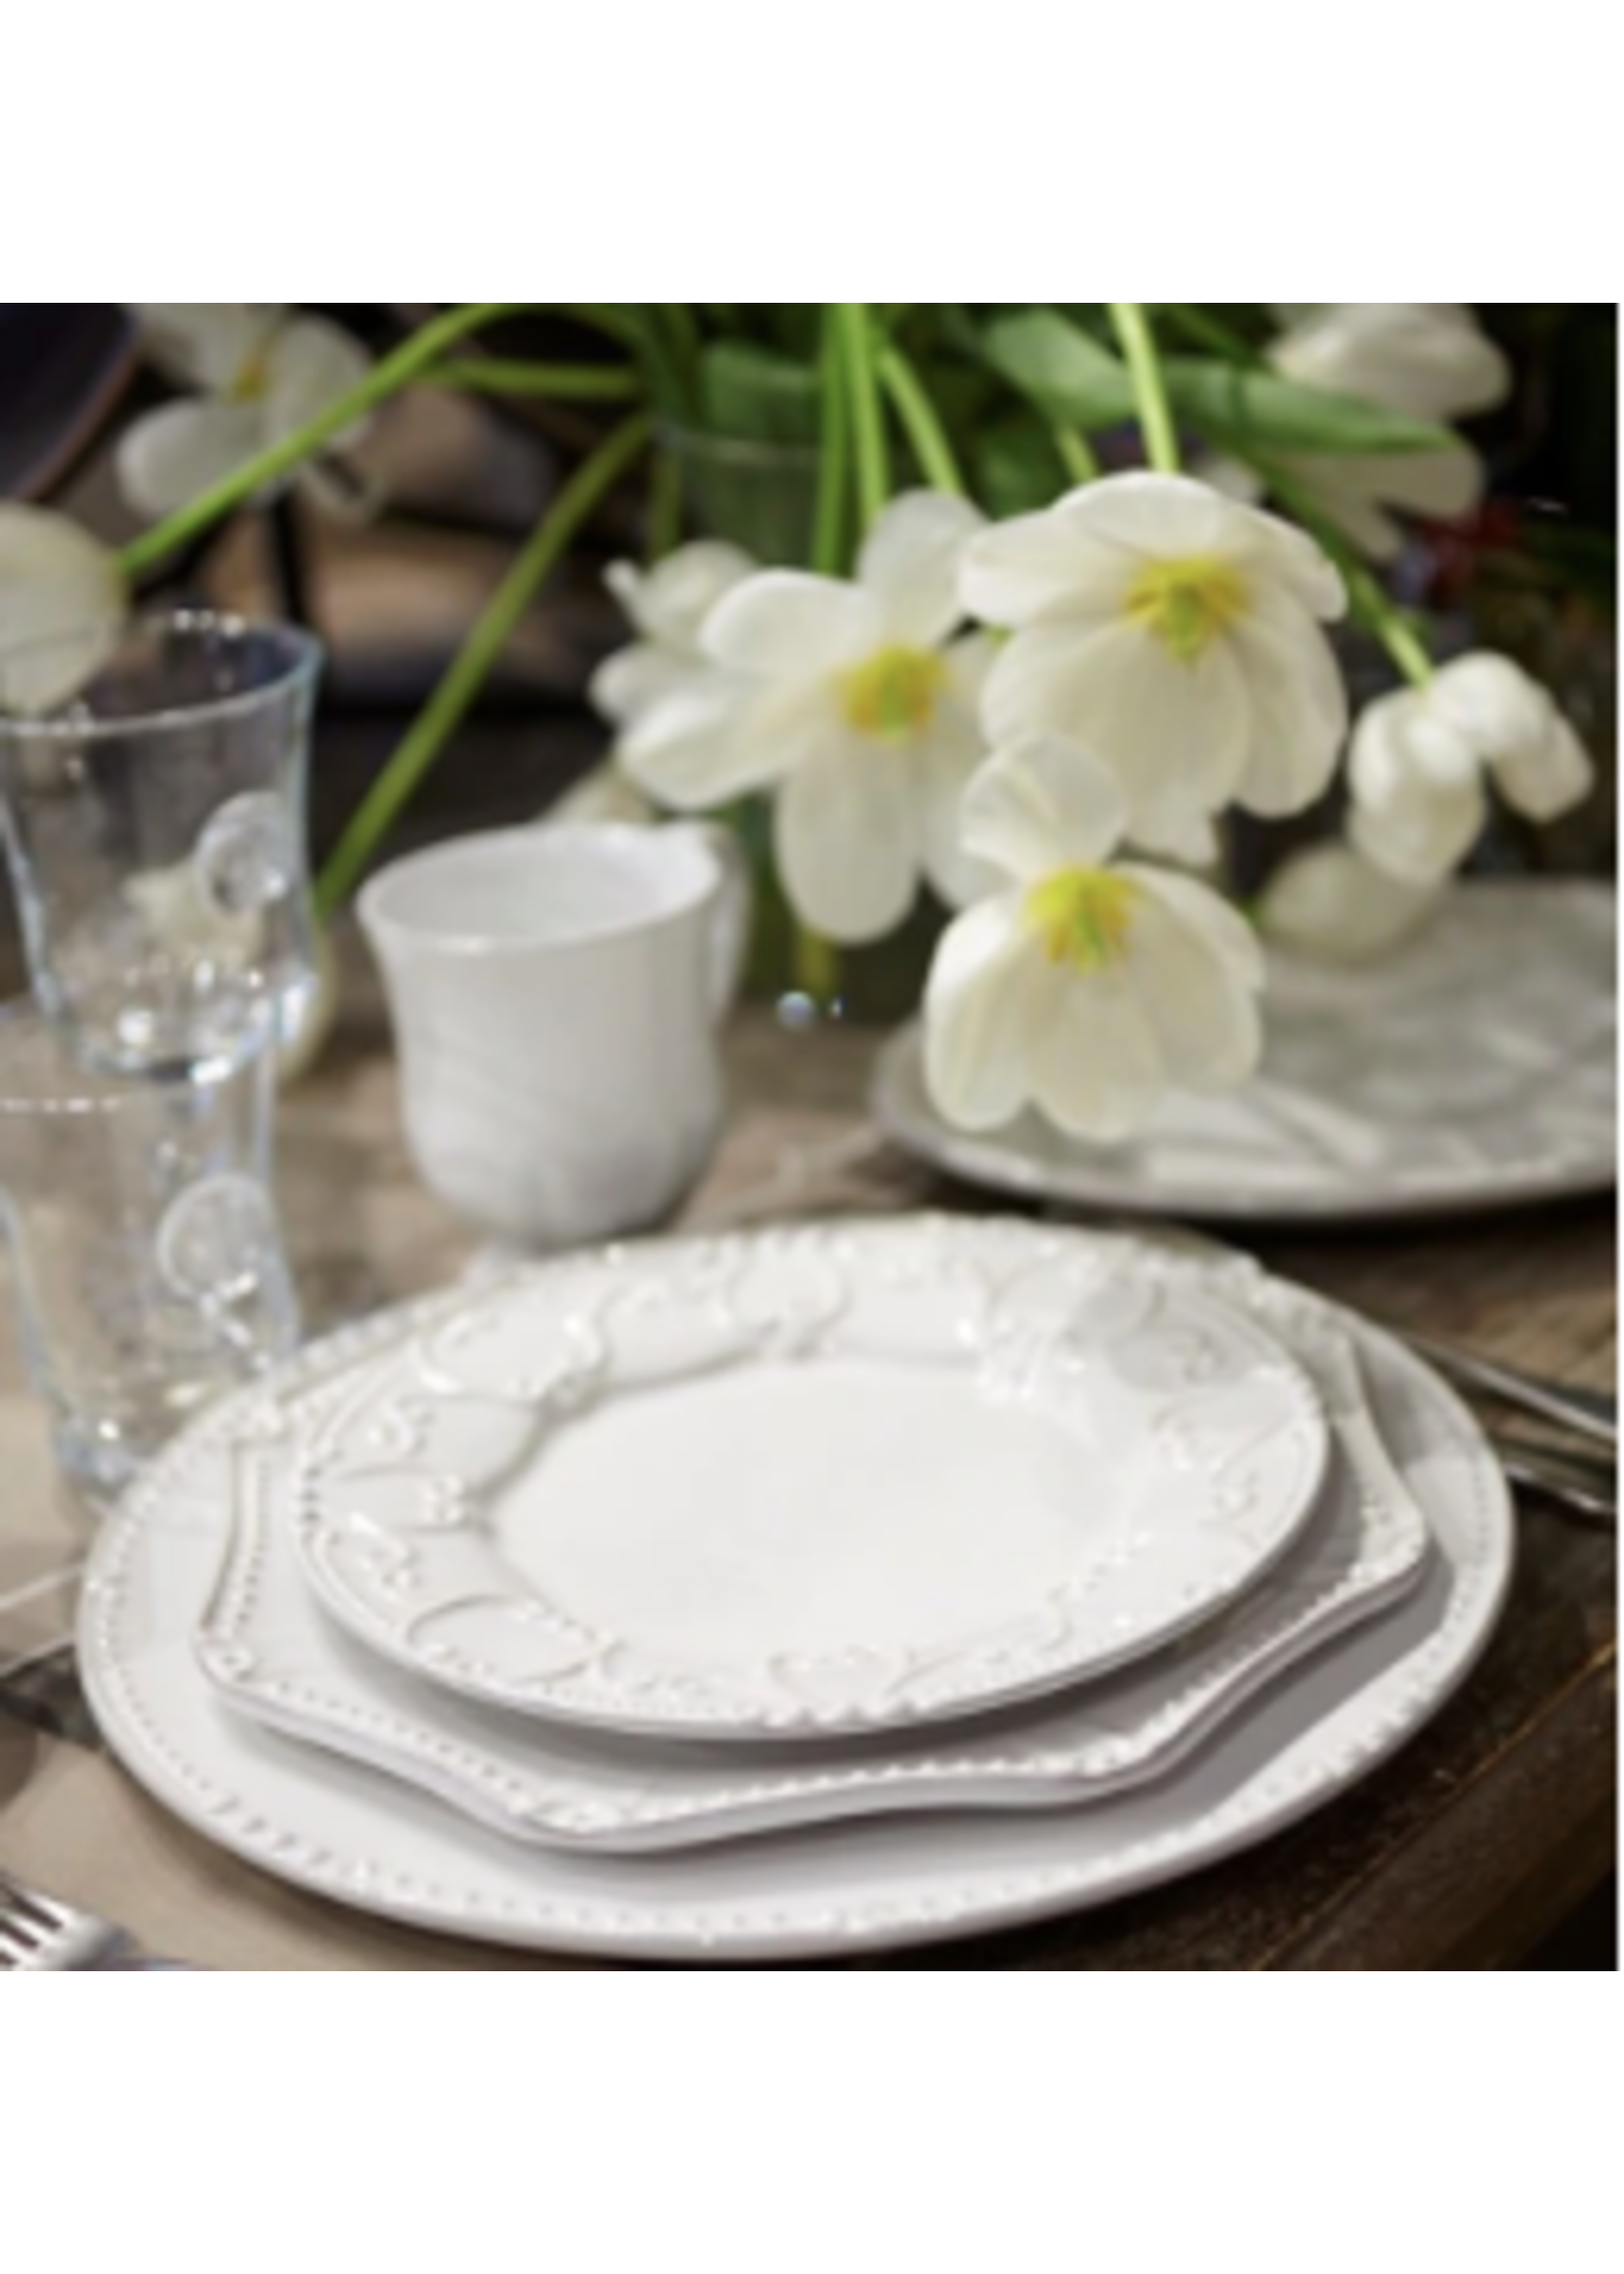 Skyros Designs Isabella Pure White Round dinner